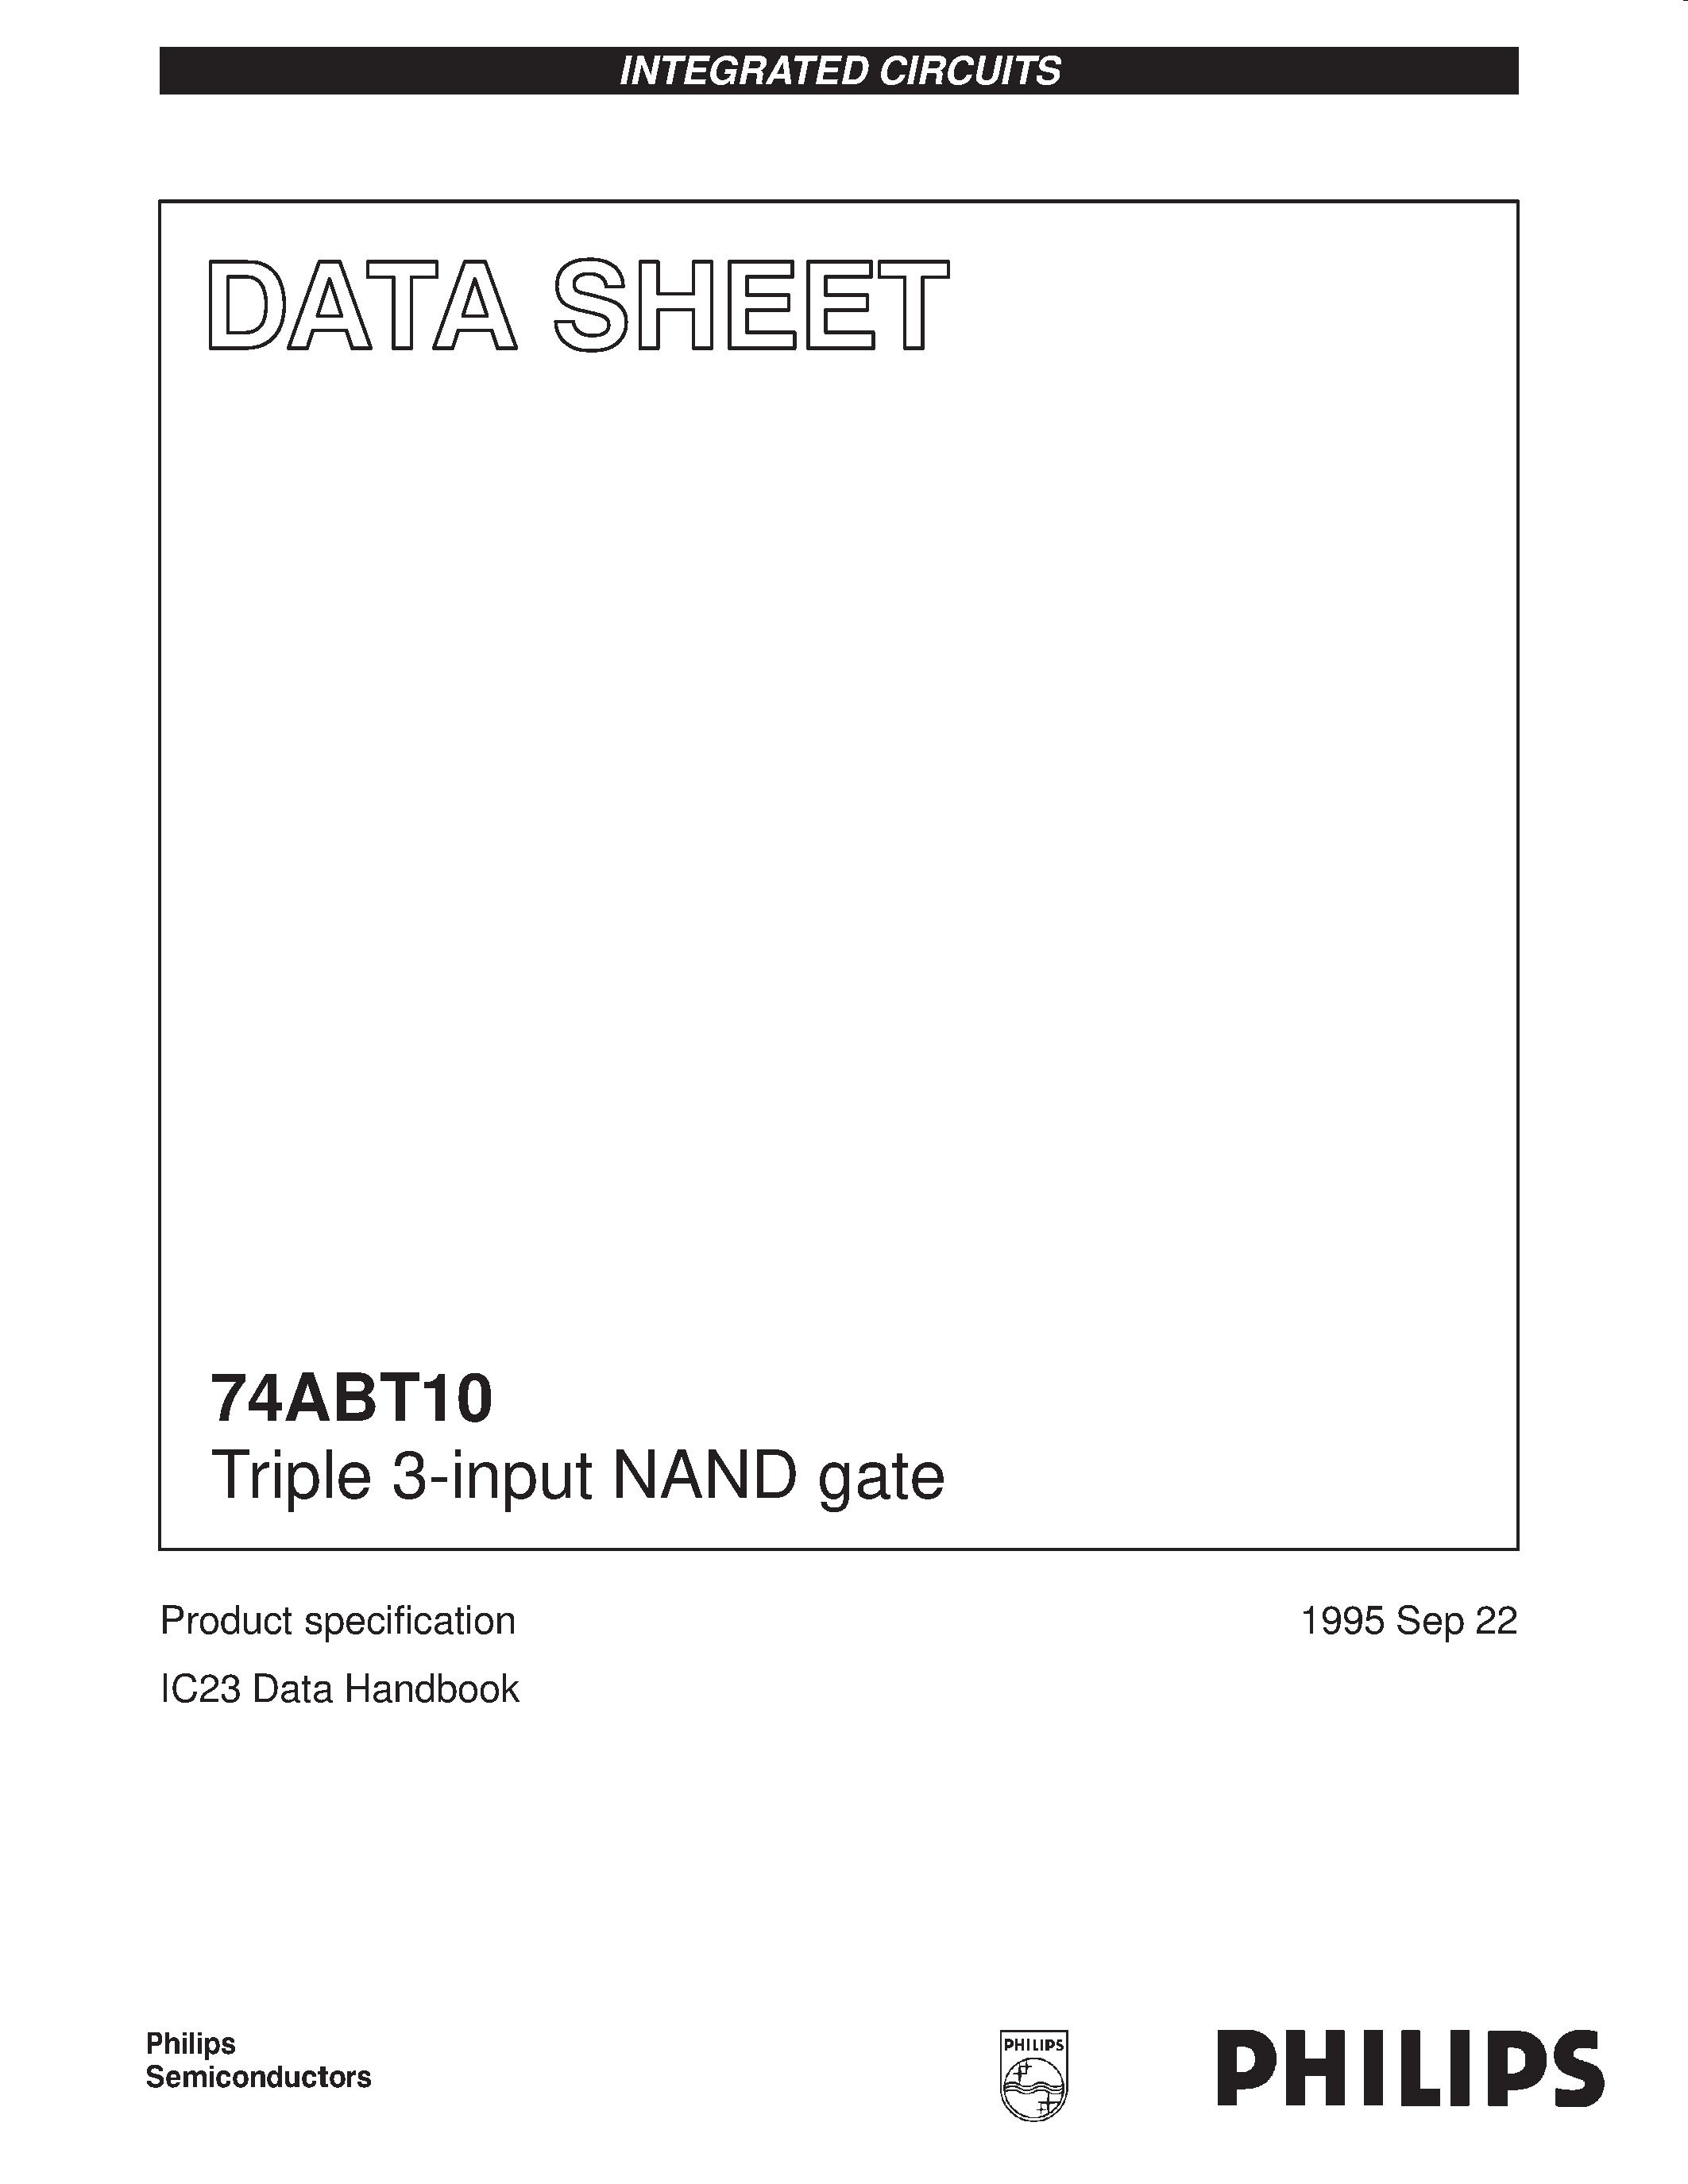 Даташит 74ABT10N - Triple 3-input NAND gate страница 1